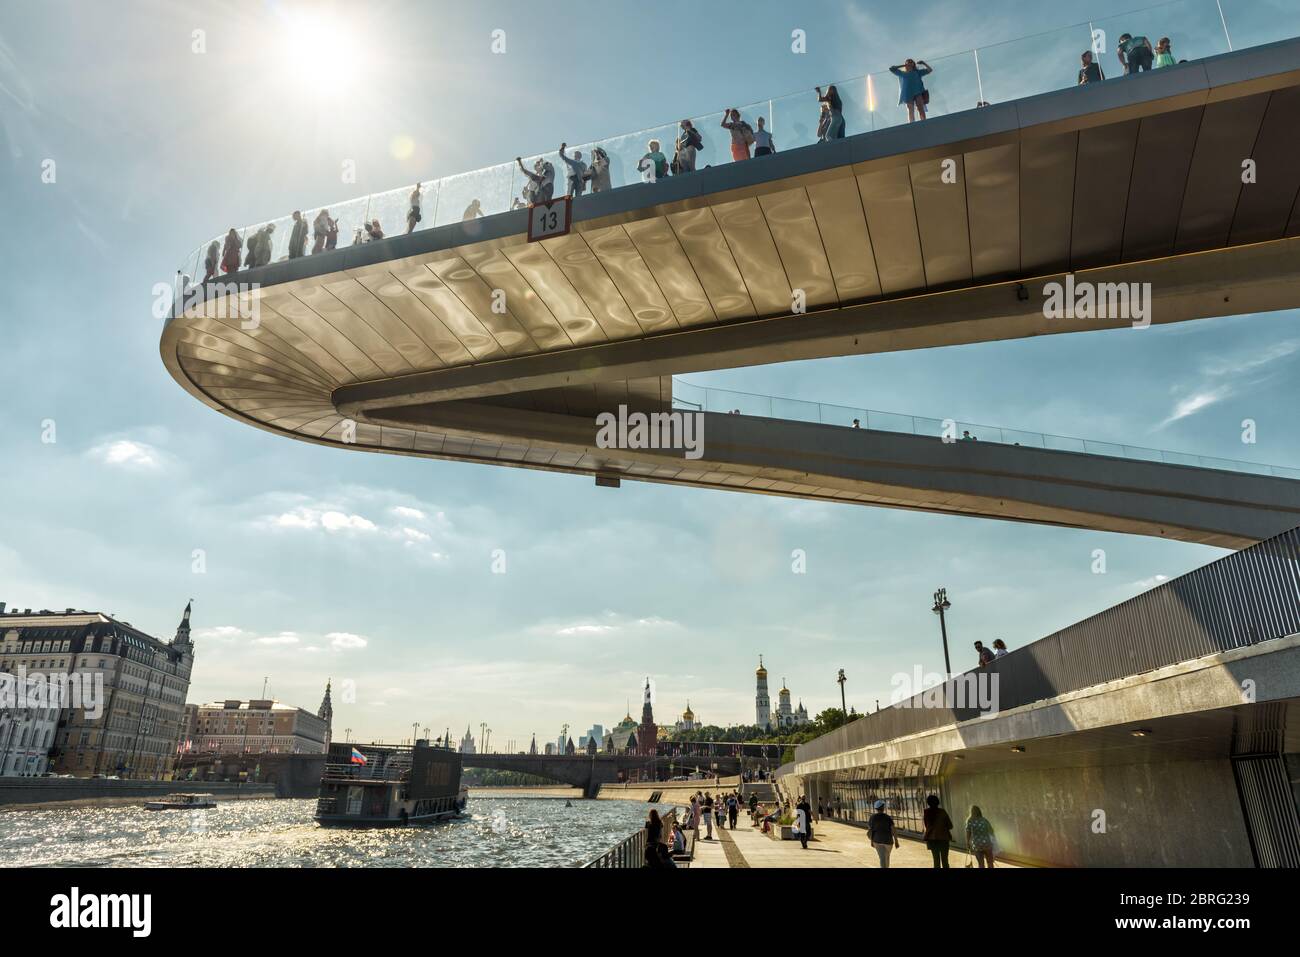 Moskau - 16. Juni 2018: Schwimmende Brücke im Zaryadye Park in der Nähe von Moskau Kreml, Russland. Zaryadye ist eine der wichtigsten touristischen Attraktionen von Moskau. Amazi Stockfoto